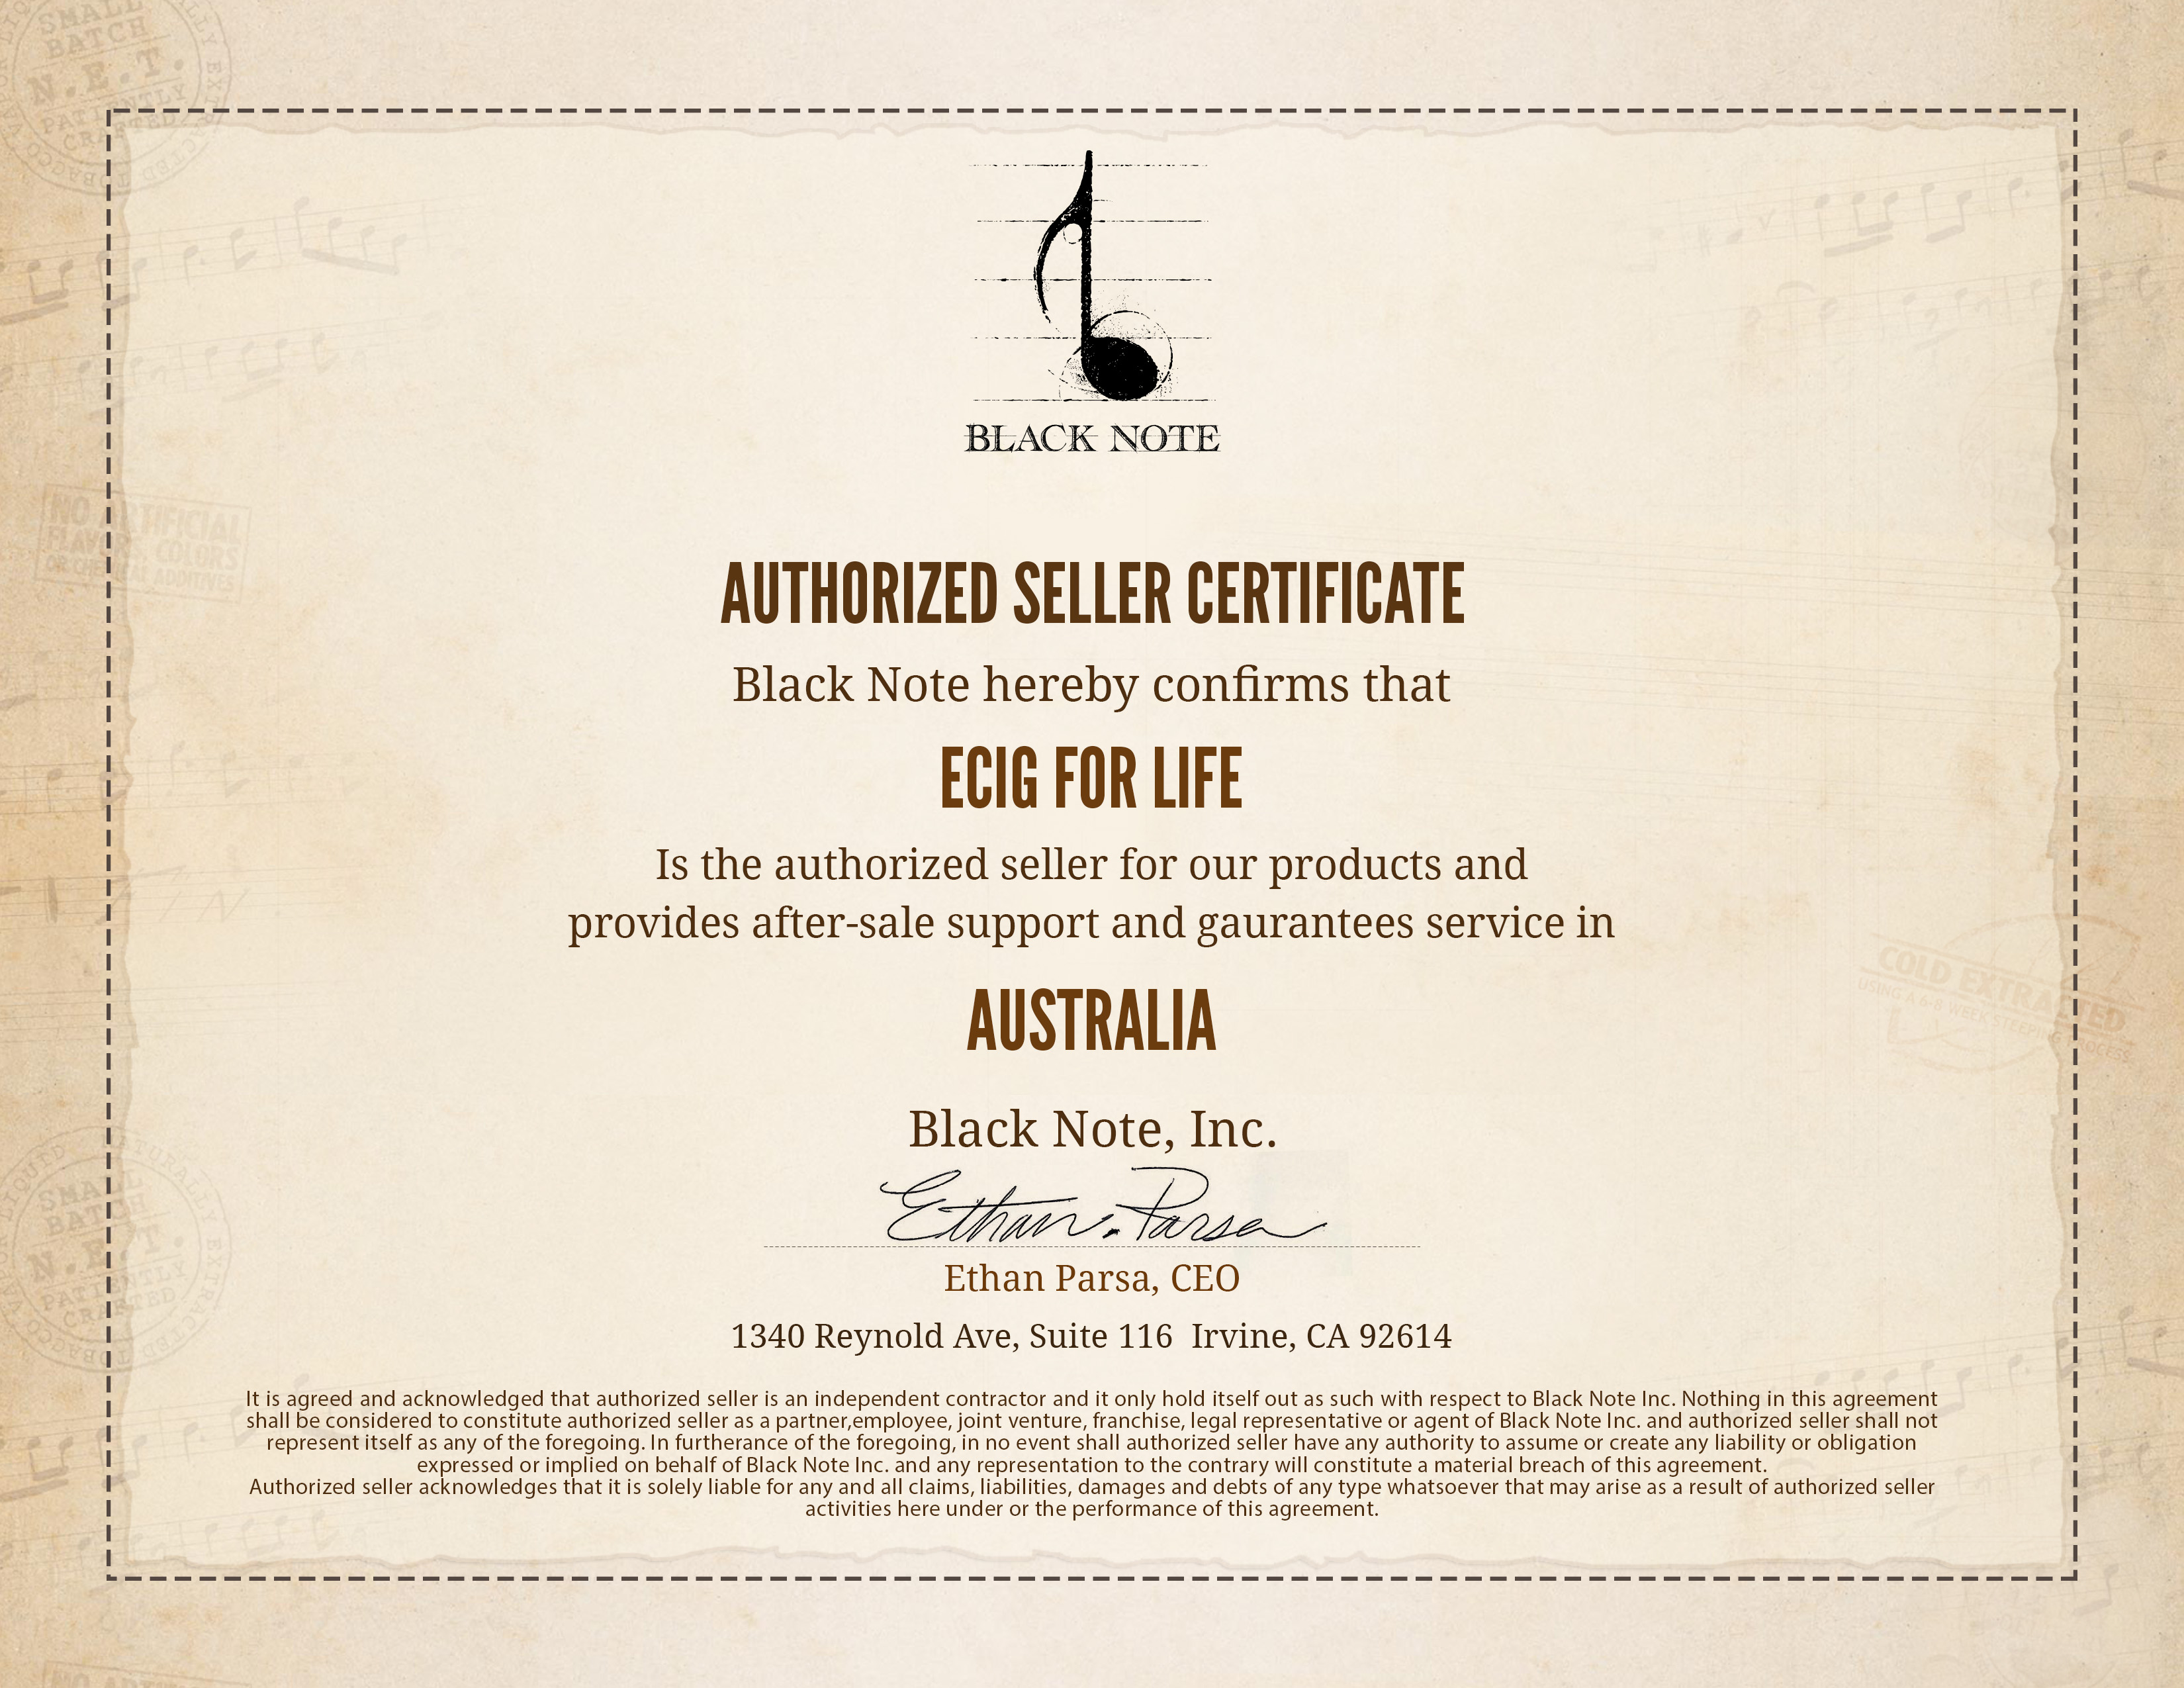 authorized-seller-certificate-ecig-for-life.jpg